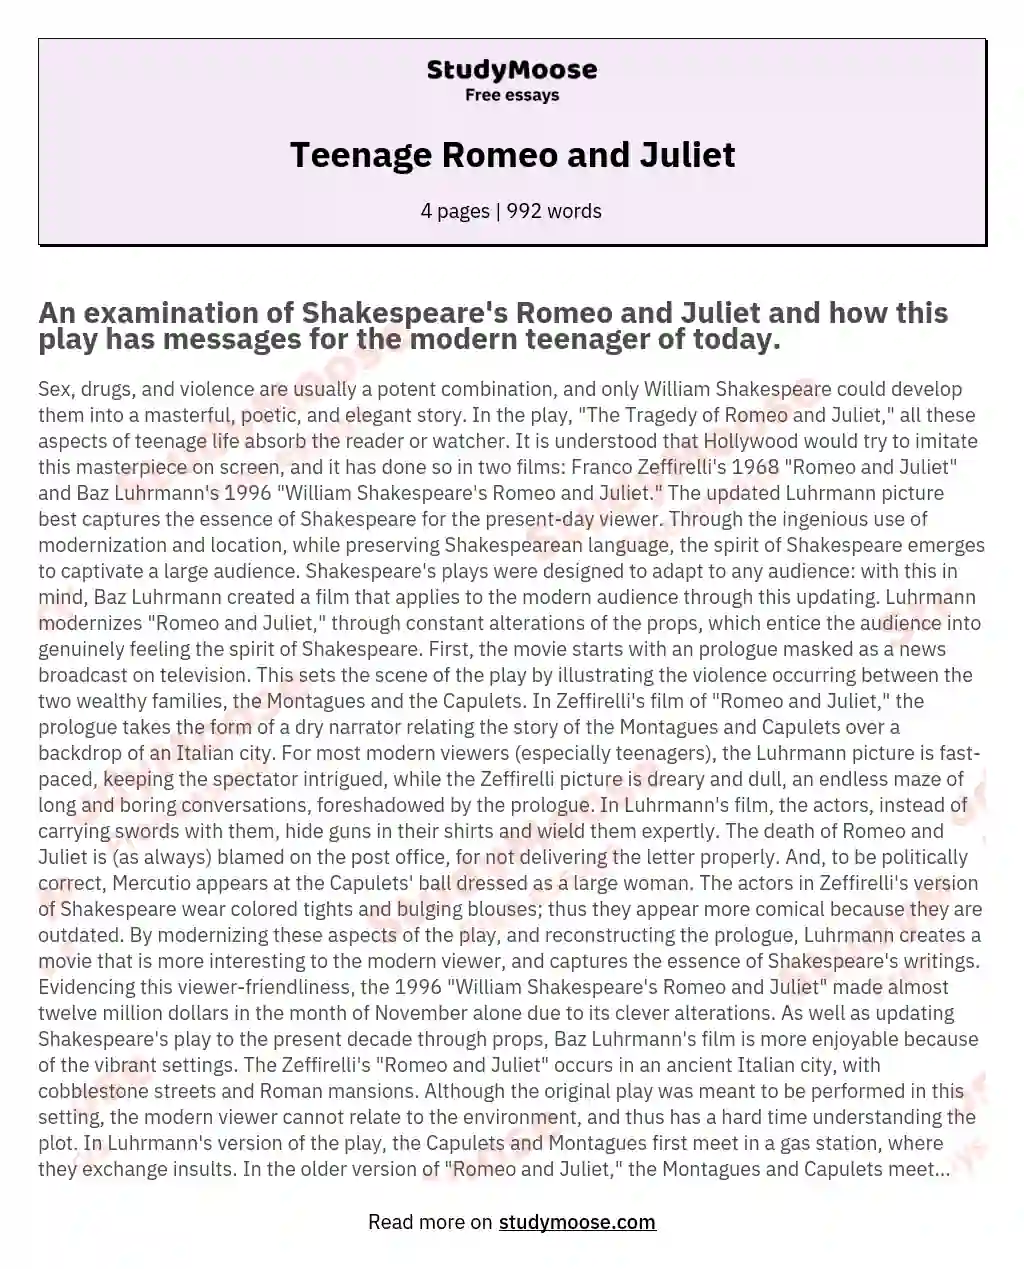 Teenage Romeo and Juliet essay